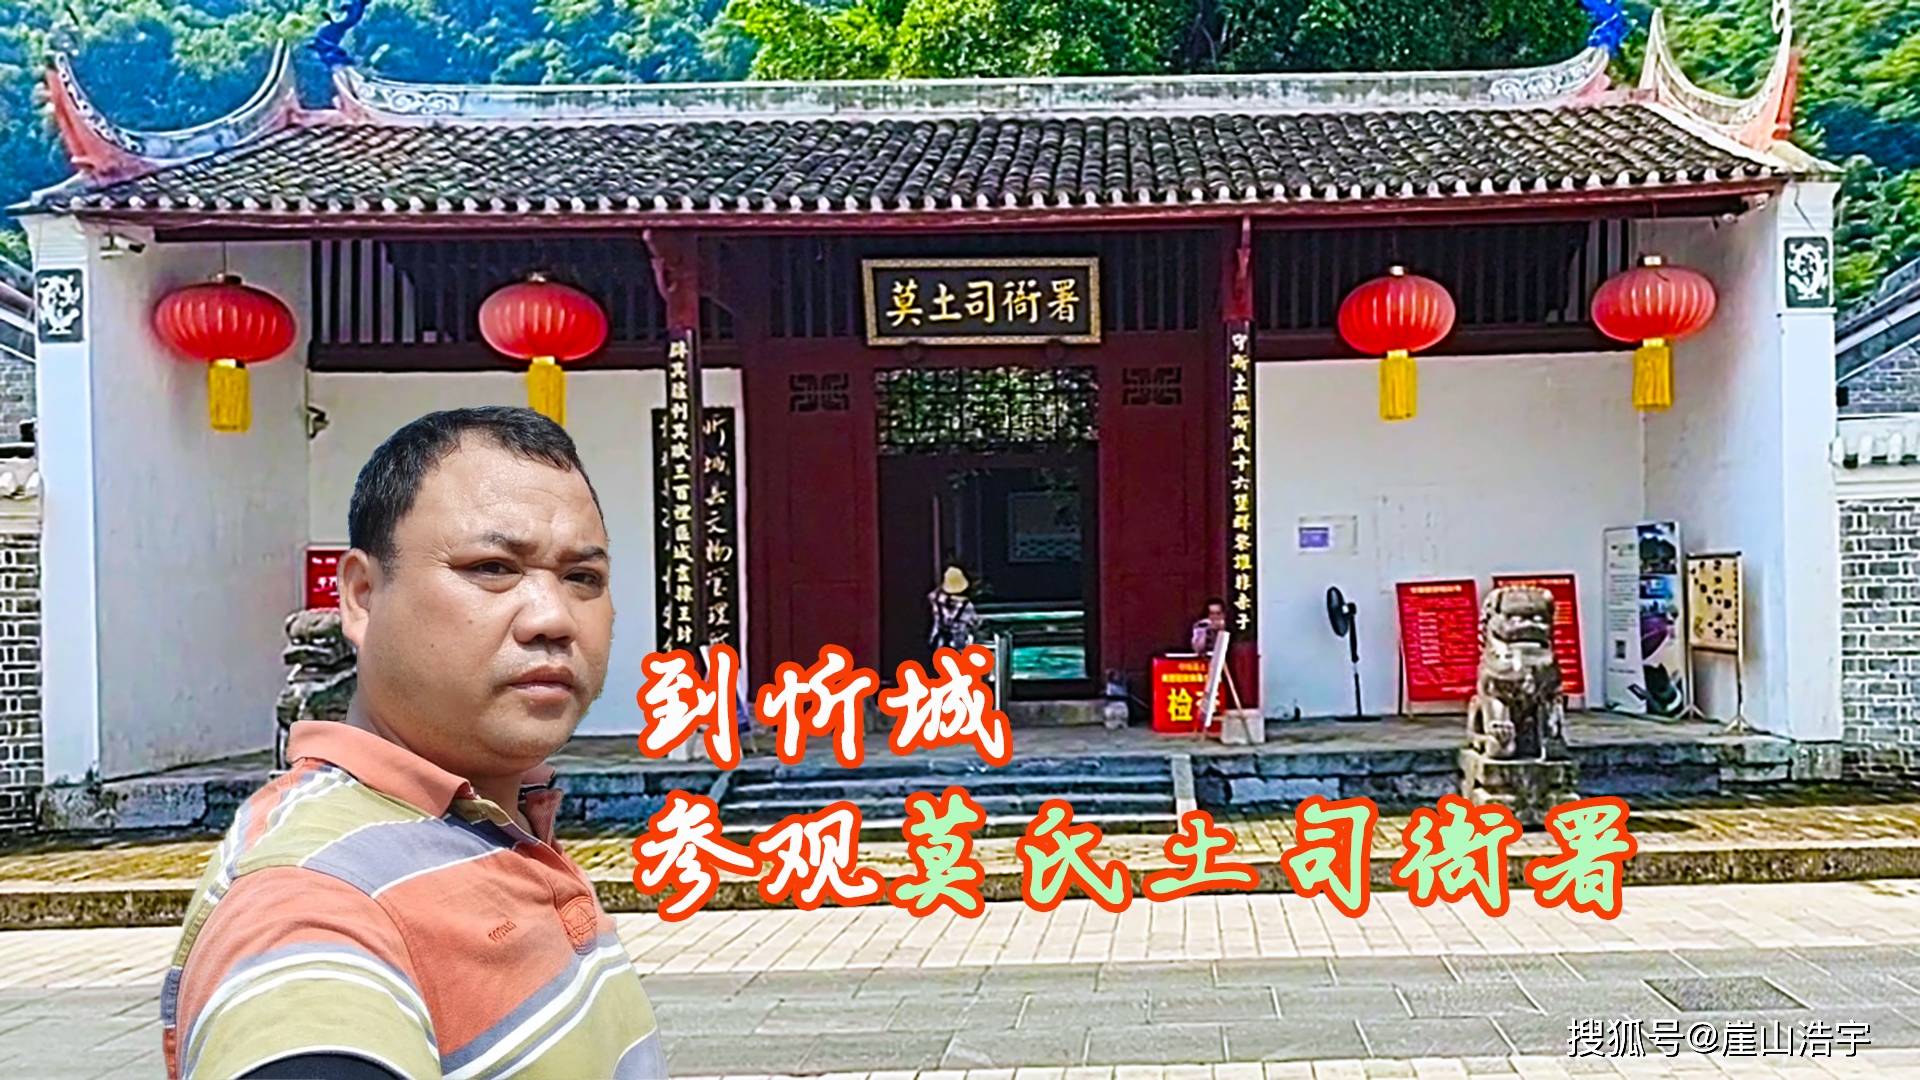 如果你来到广西忻城县莫氏土司衙署就是你最值得参观的地方了